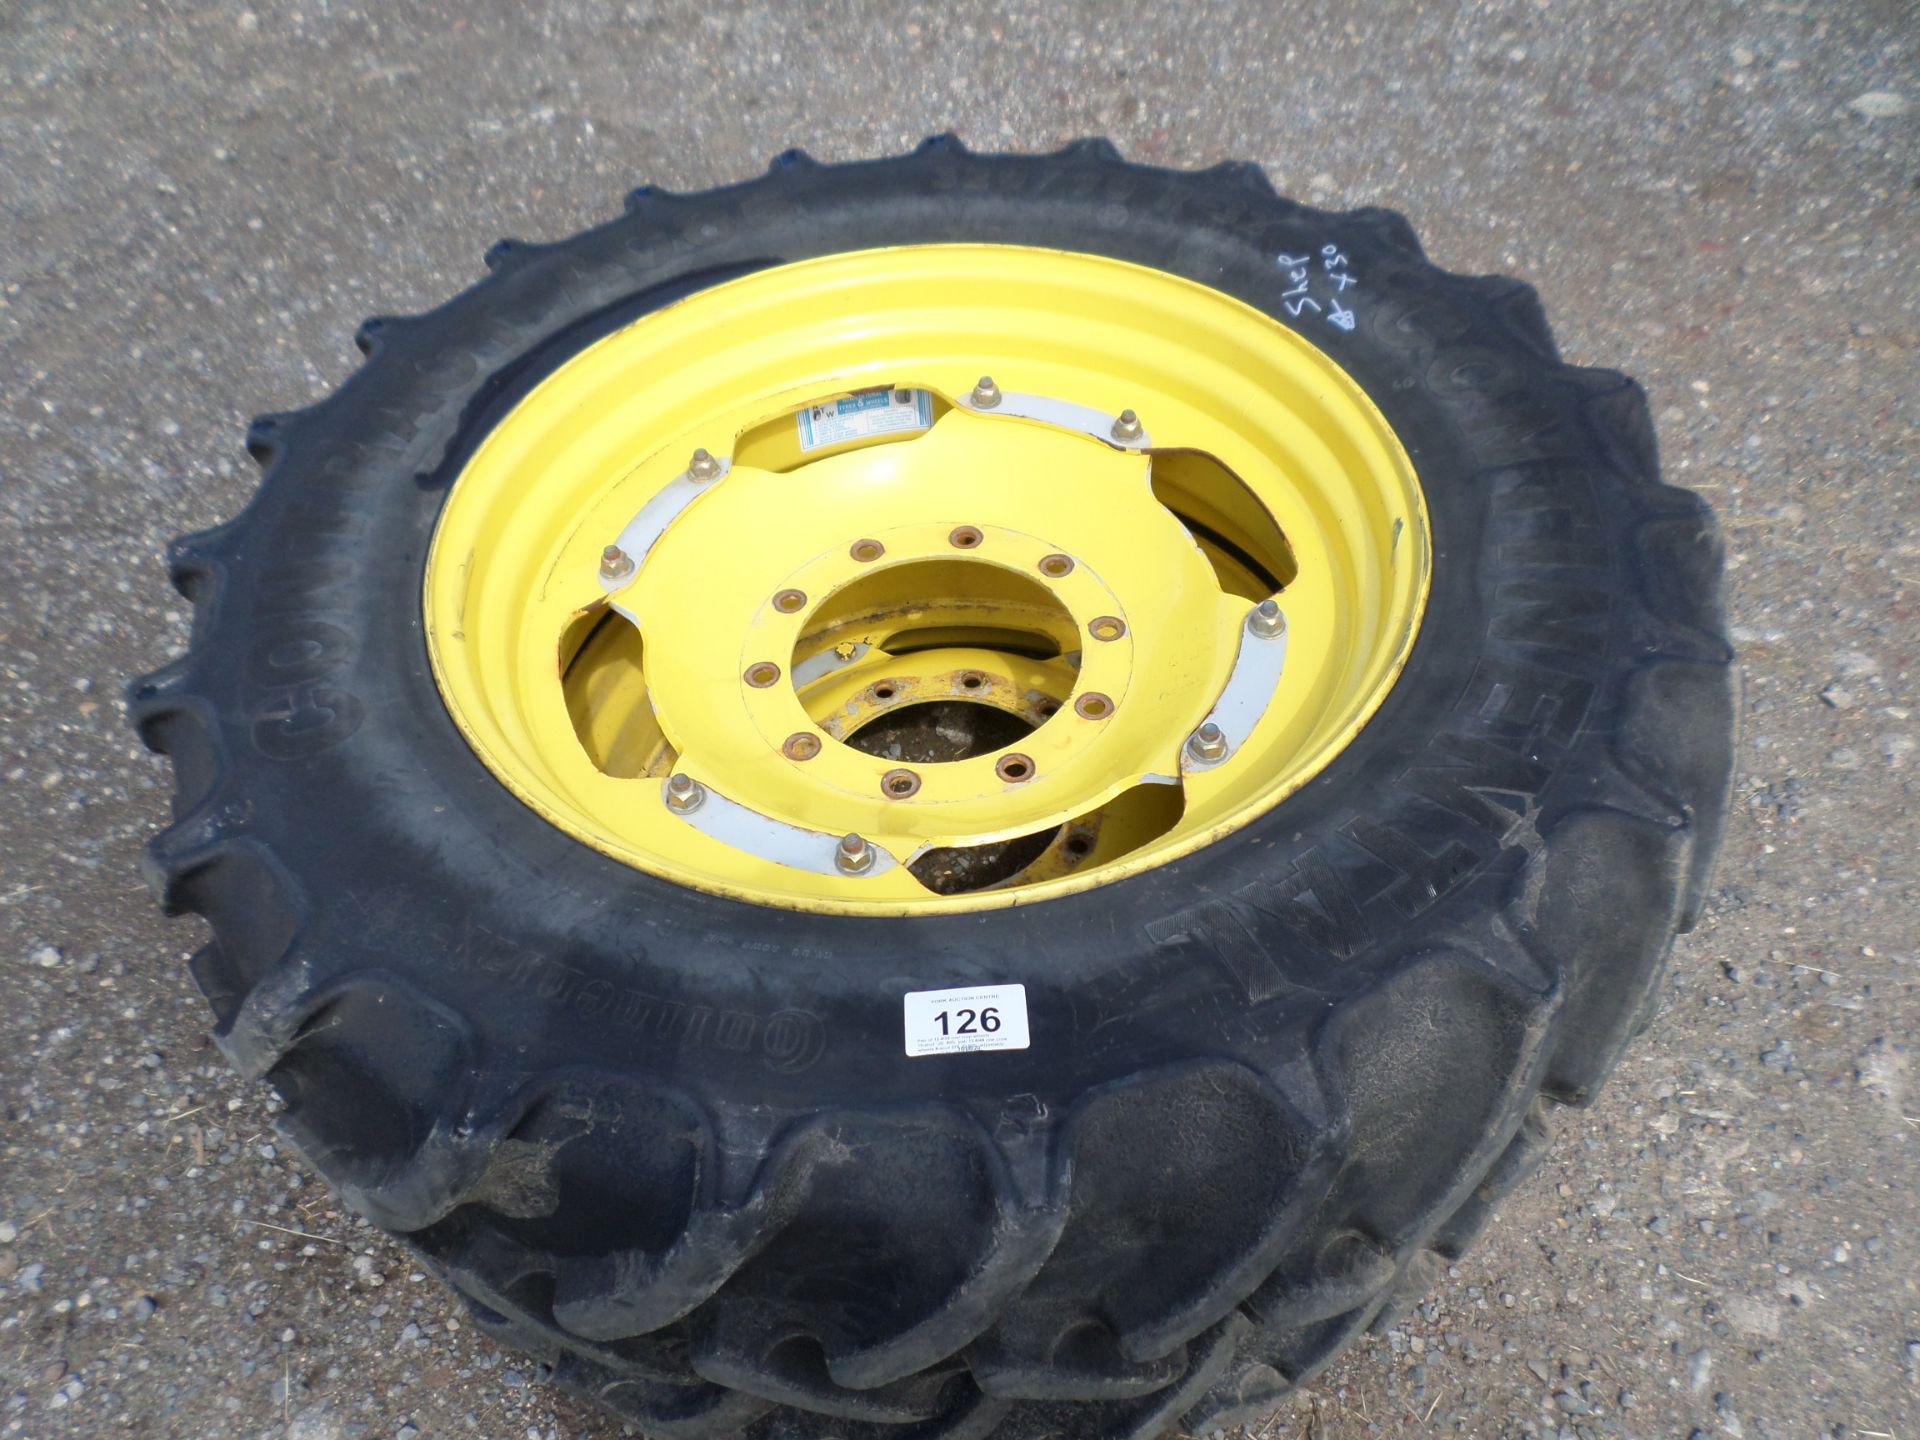 Pair of 12.4/32 row crop wheels, 10-stud, JD, 60%, pair 13.6/48 row crow wheels 8-stud 275 JD 60%,